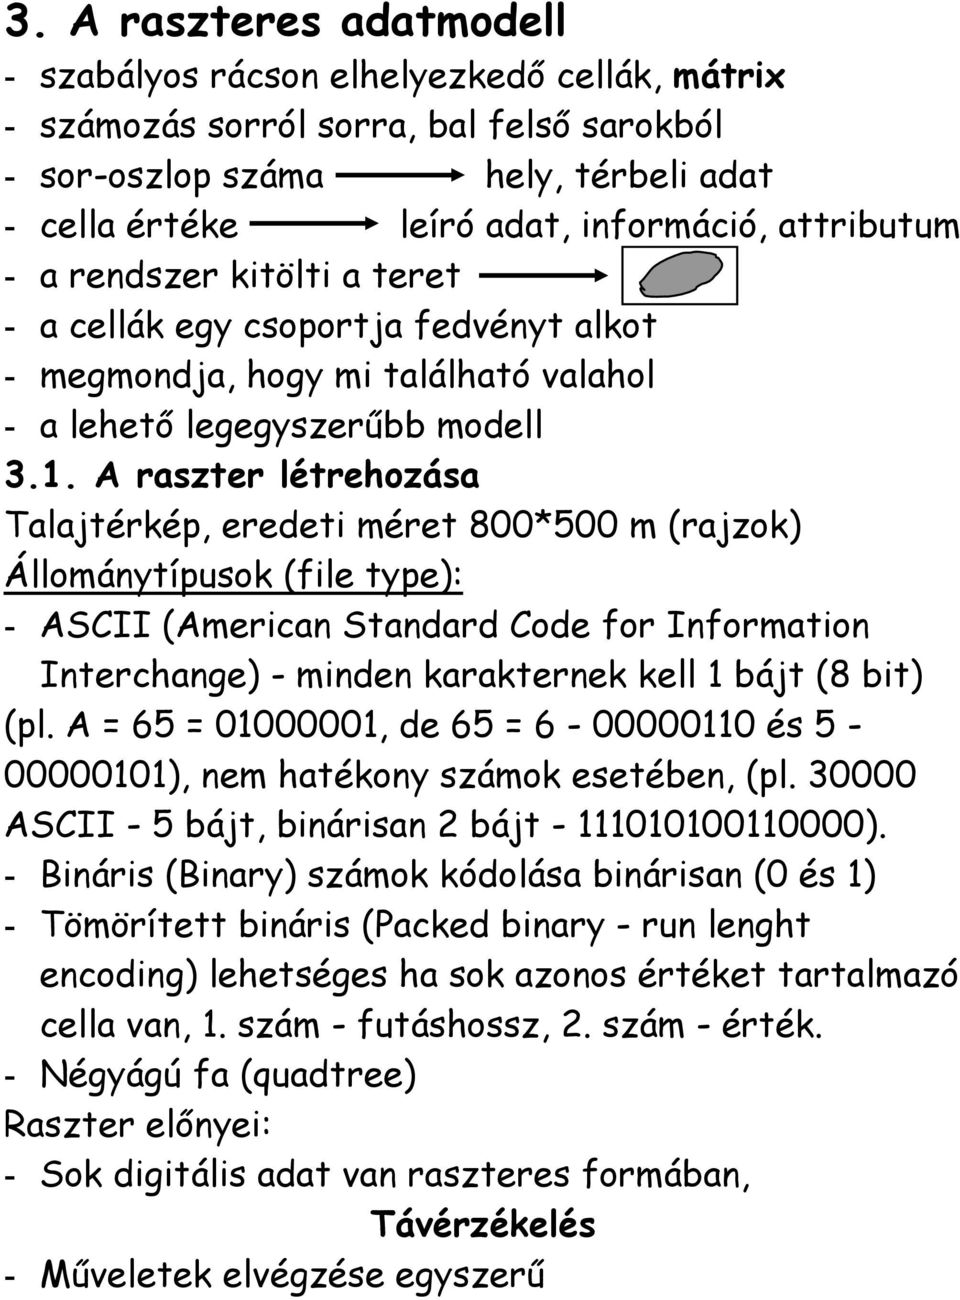 A raszter létrehozása Talajtérkép, eredeti méret 800*500 m (rajzok) Állománytípusok (file type): - ASCII (American Standard Code for Information Interchange) - minden karakternek kell 1 bájt (8 bit)